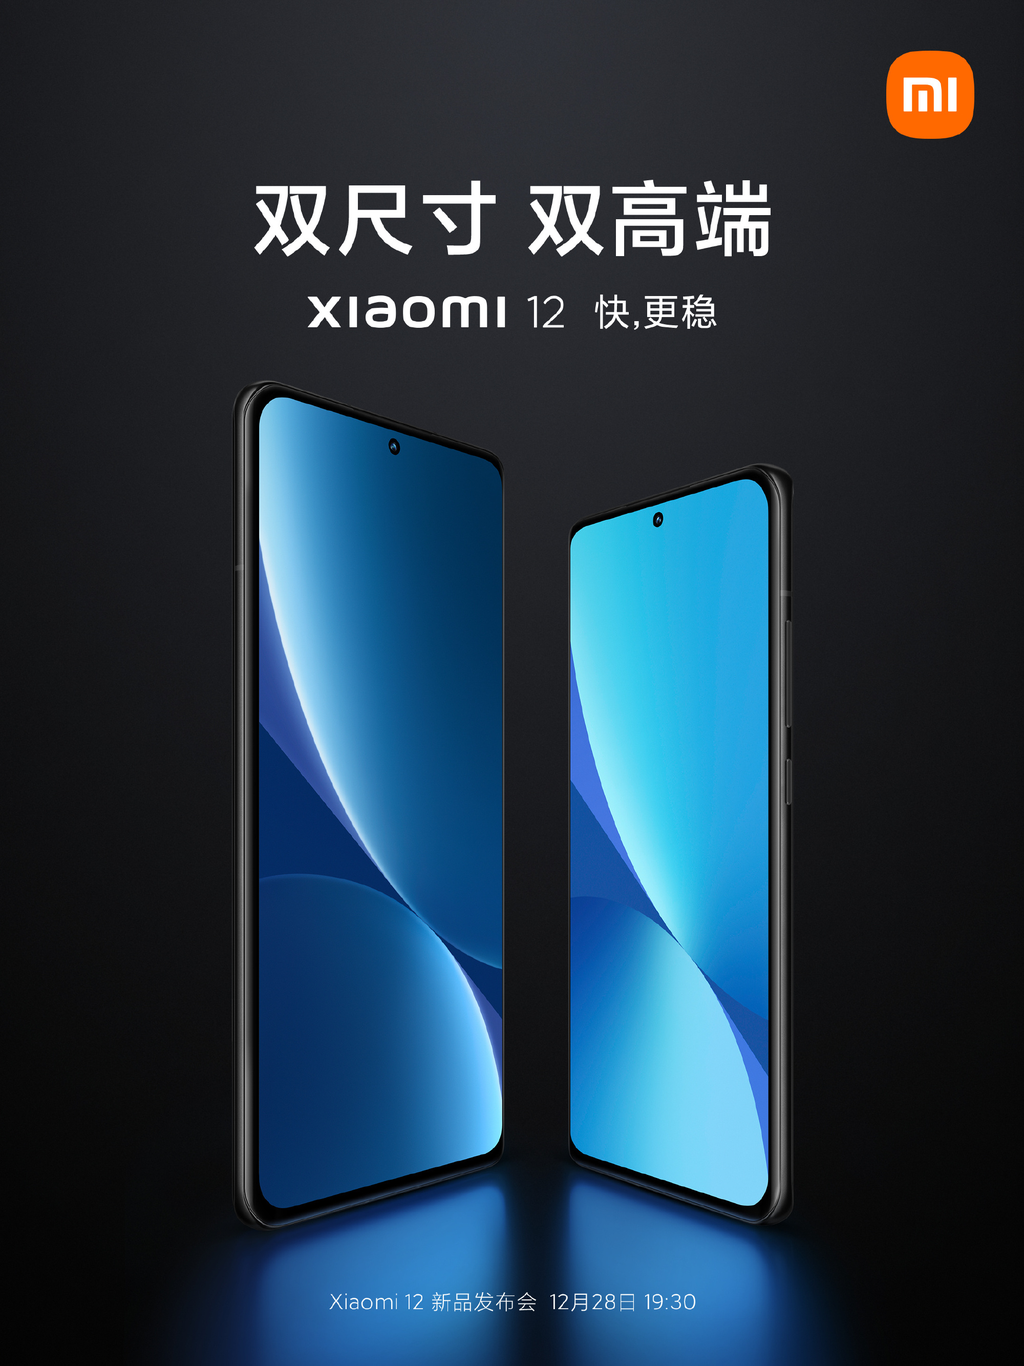 Pôster confirma design frontal do Xiaomi 12 Pro e Xiaomi 12 (Imagem: Reprodução/Xiaomi)